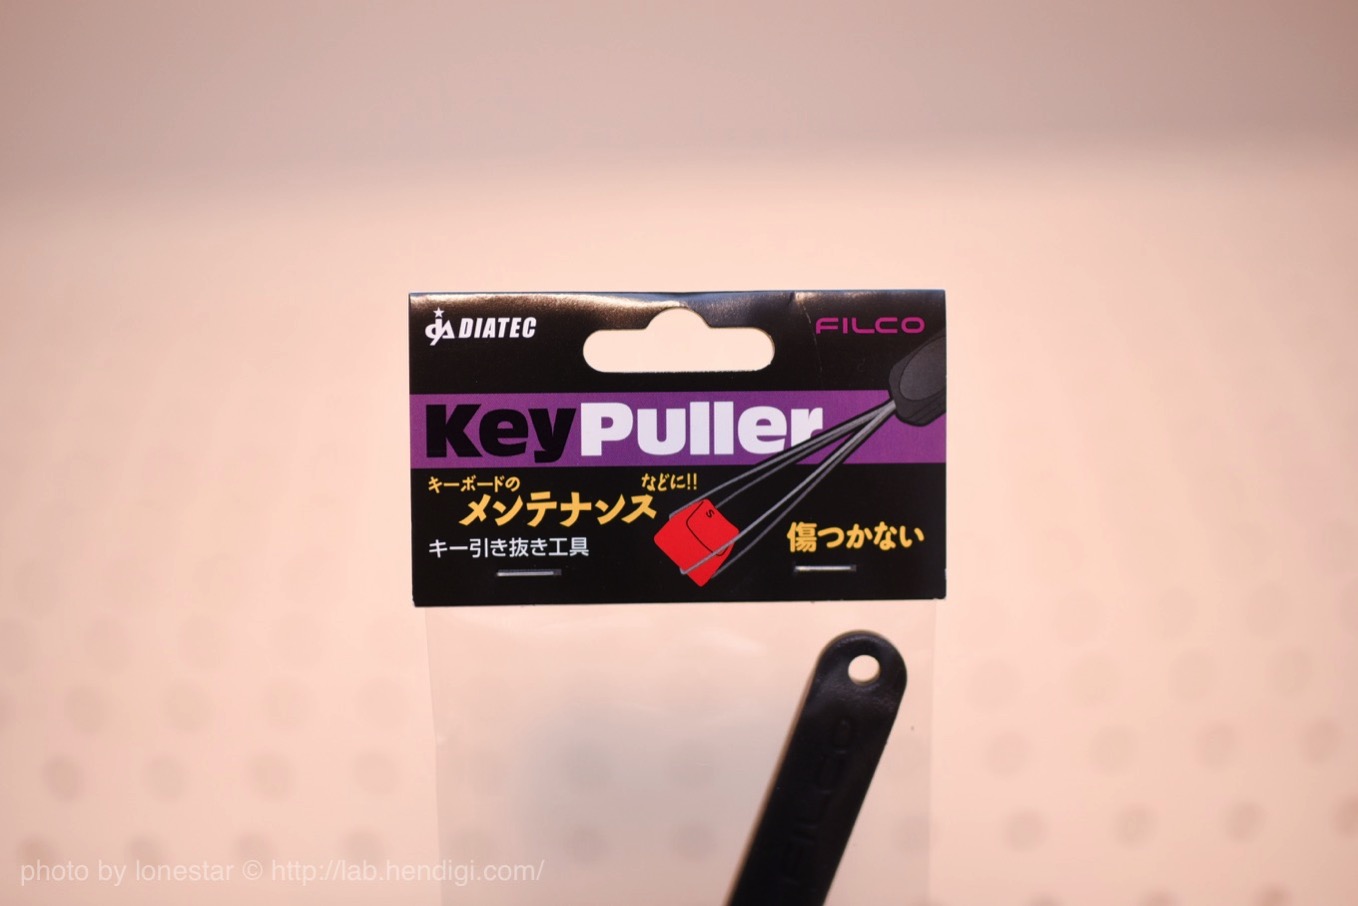 FILCO Keypullerを使ってみました。キーボードの掃除にキーキャップカスタムに使える便利なアイテム！